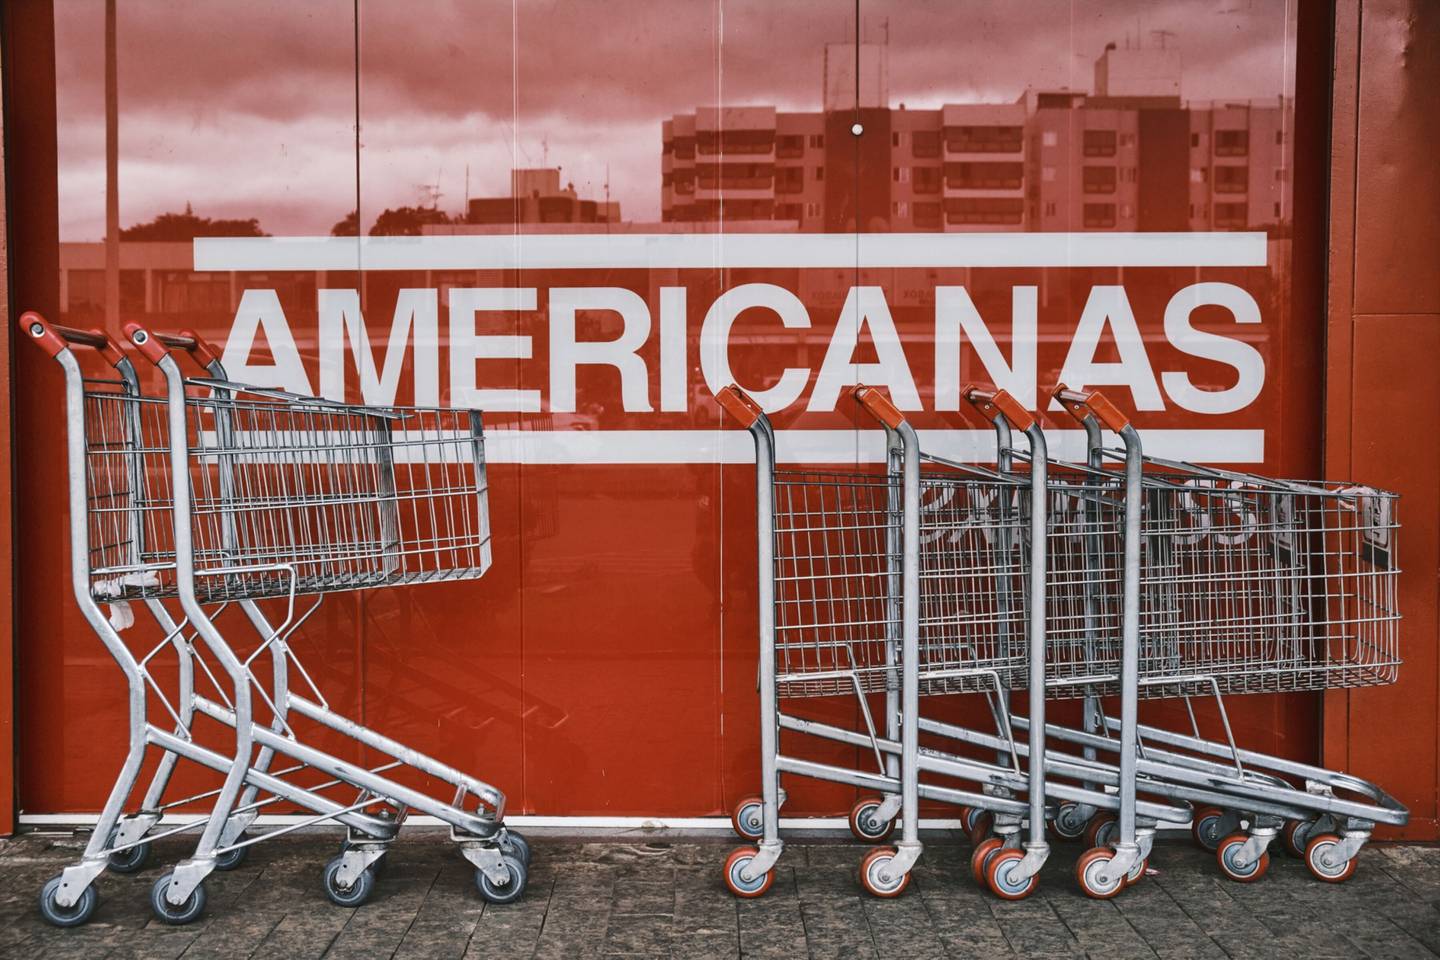 Cartel en el exterior de una tienda de Americanas en Brasilia, Brasil, el sábado 21 de enero de 2023. Fotógrafo: Gustavo Minas/Bloomberg